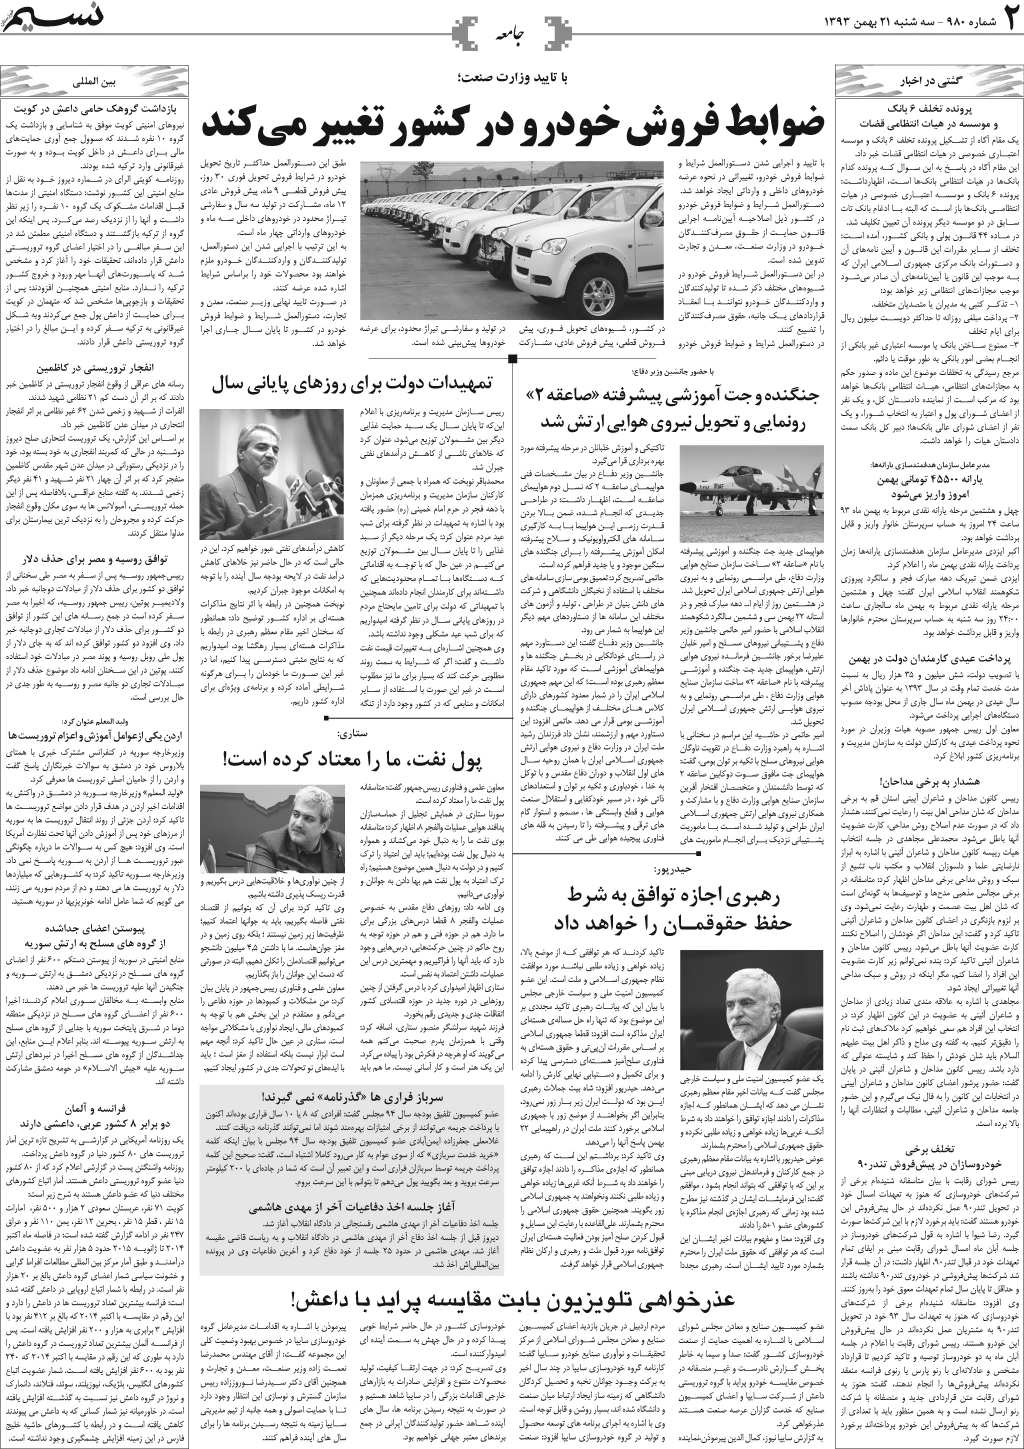 صفحه جامعه روزنامه نسیم شماره 980